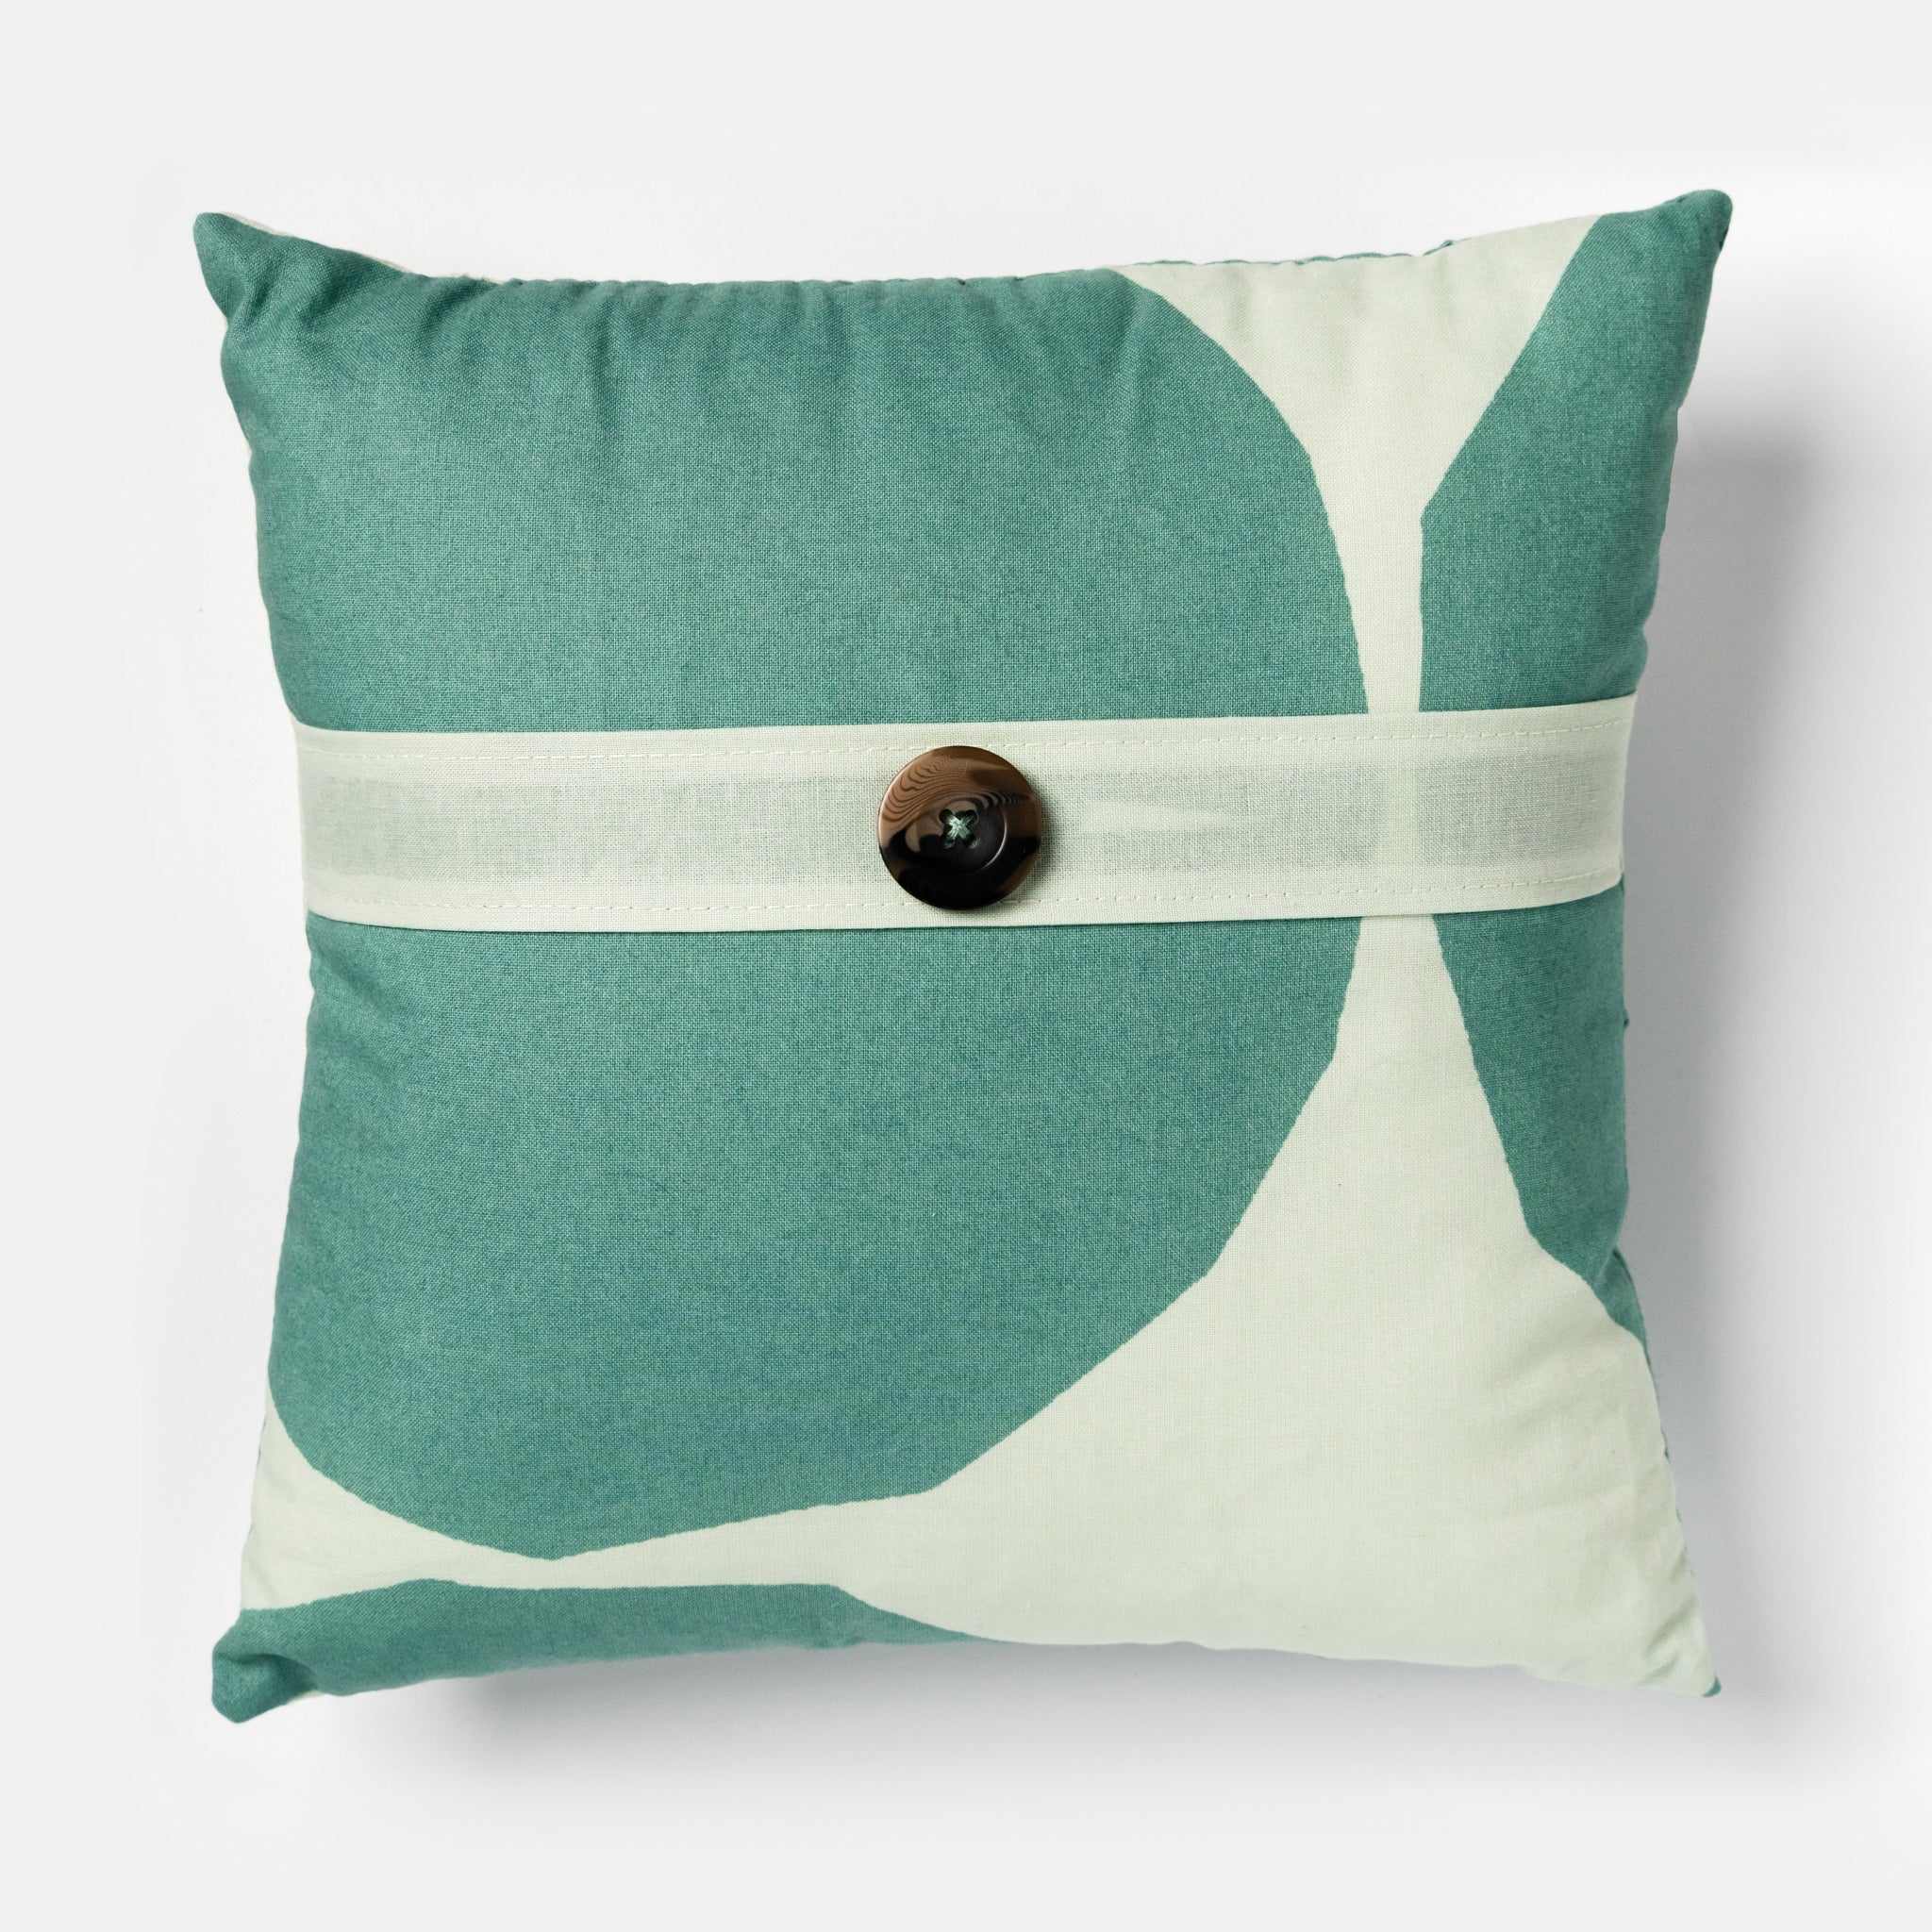 Throw Pillow with Marimekko Cotton Fabric